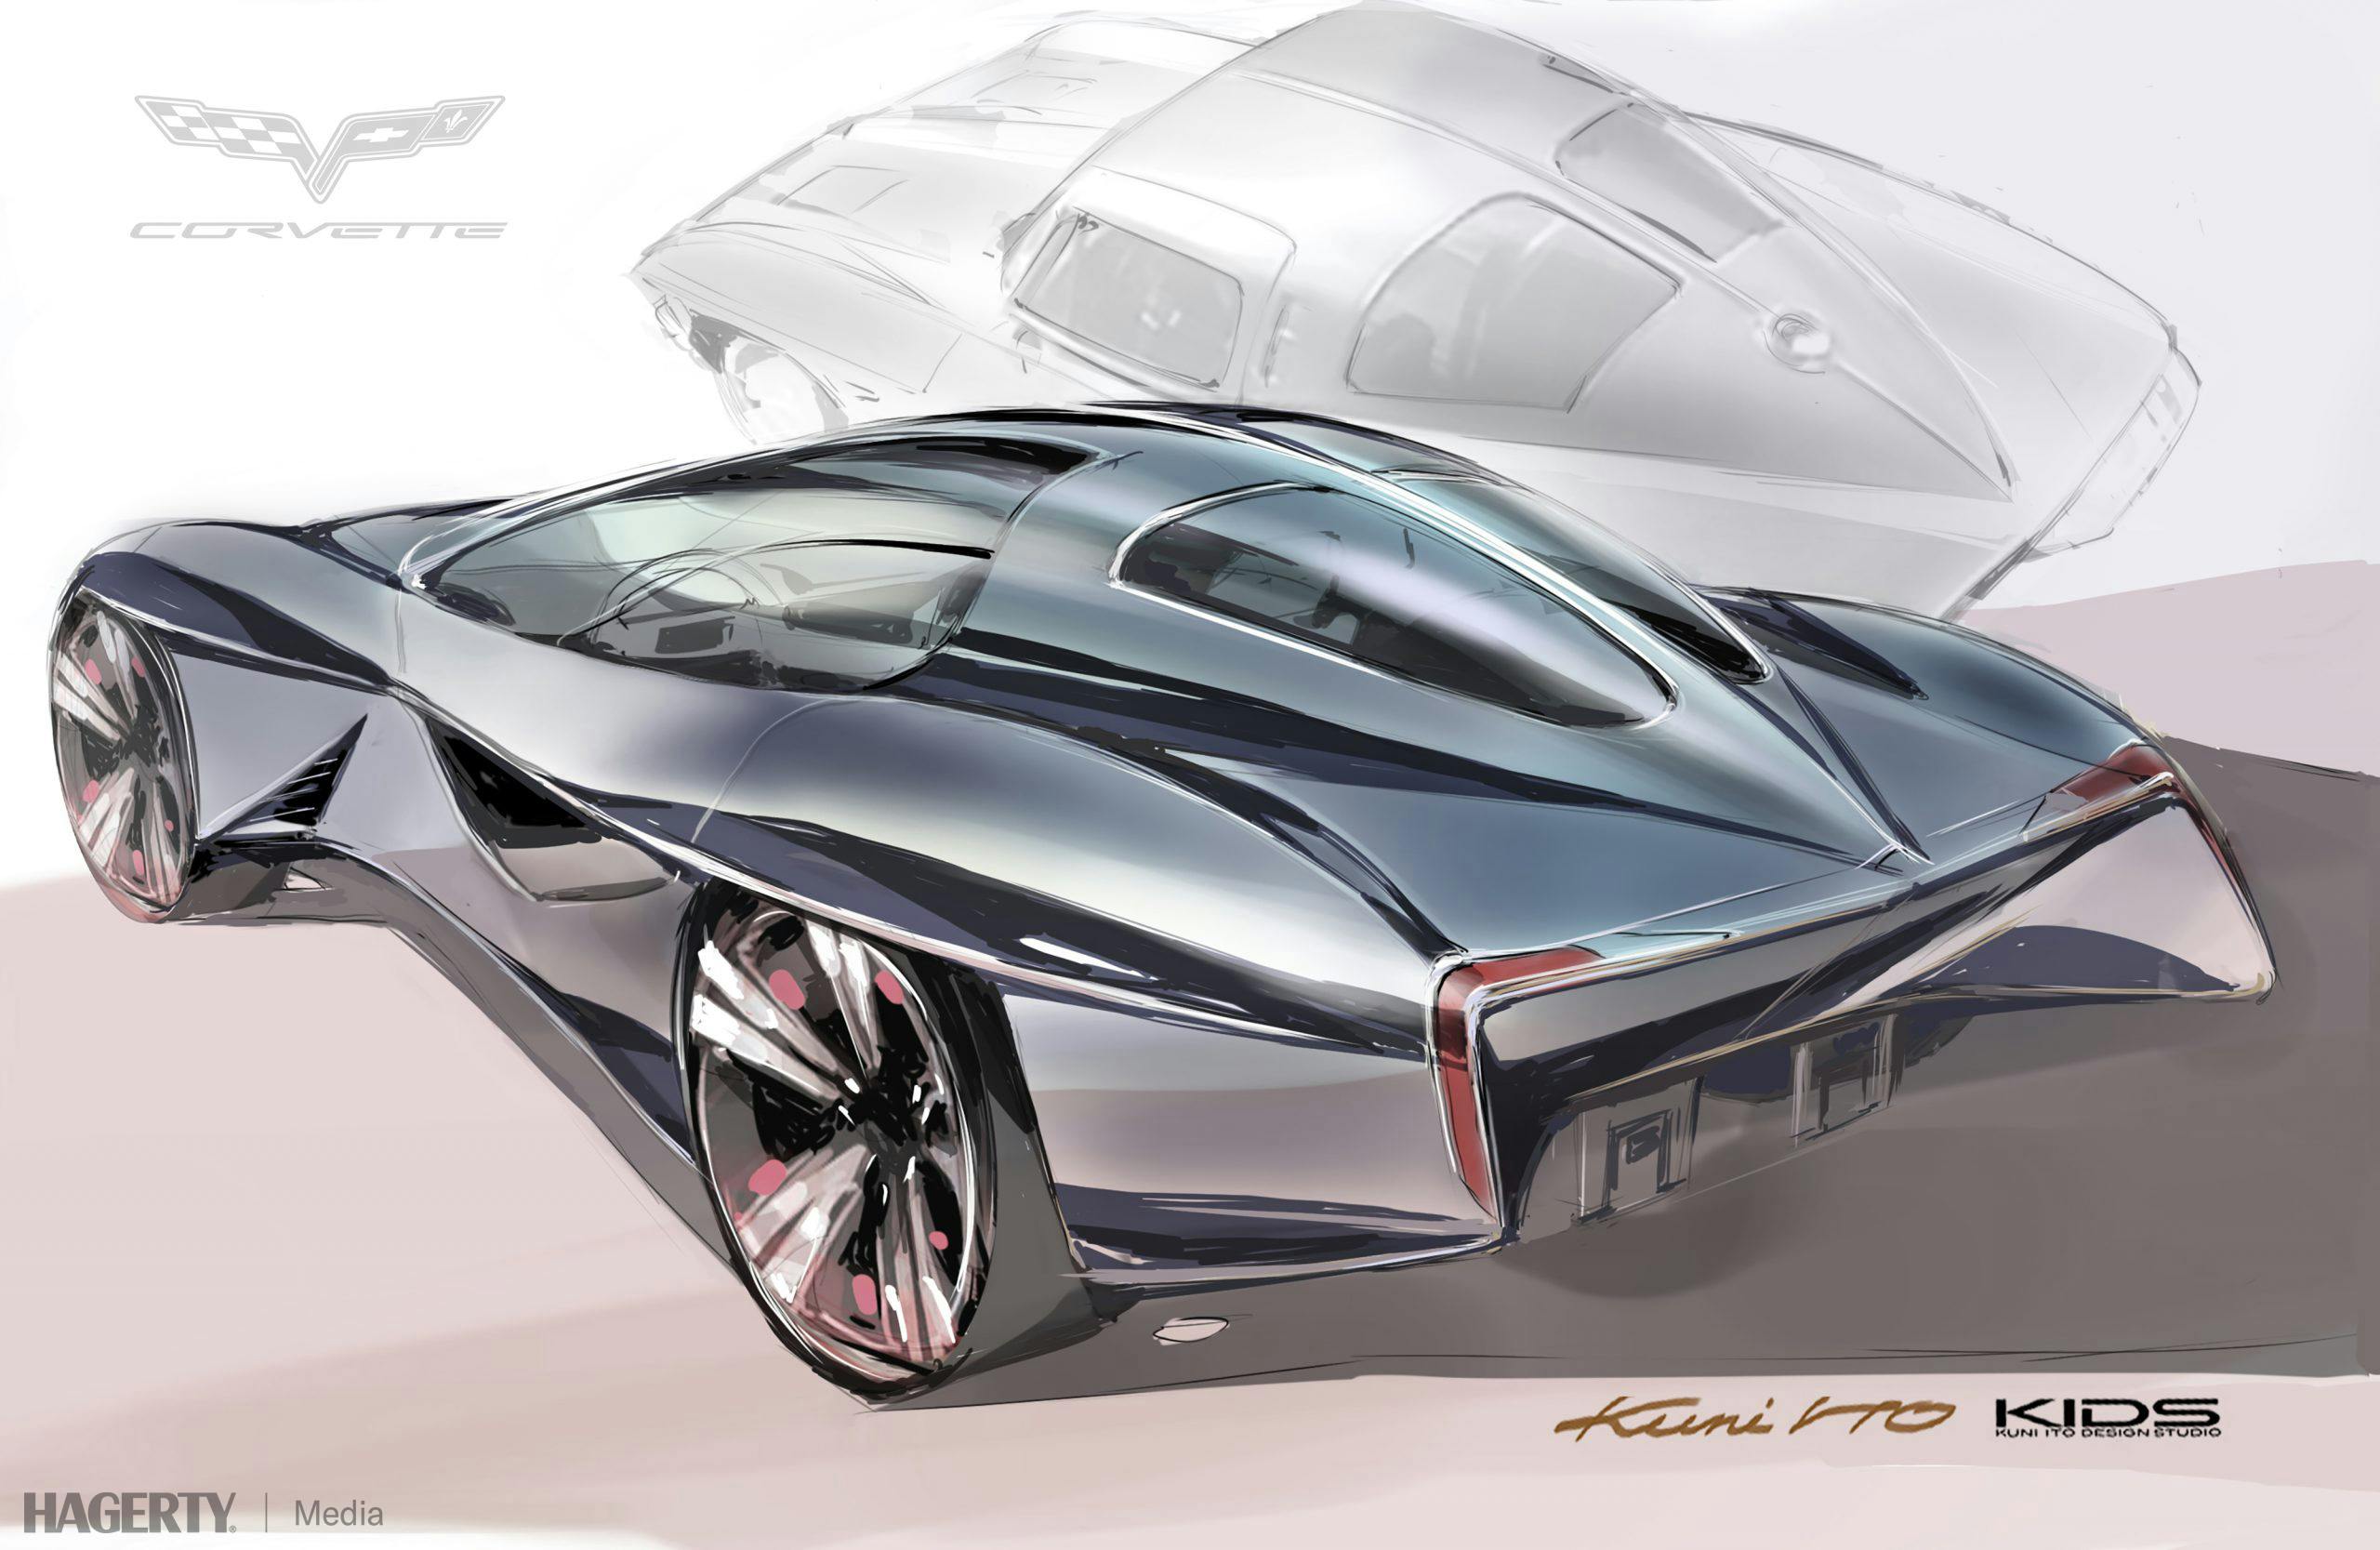 Kuni Ito C9 corvette design sketch rear three-quarter